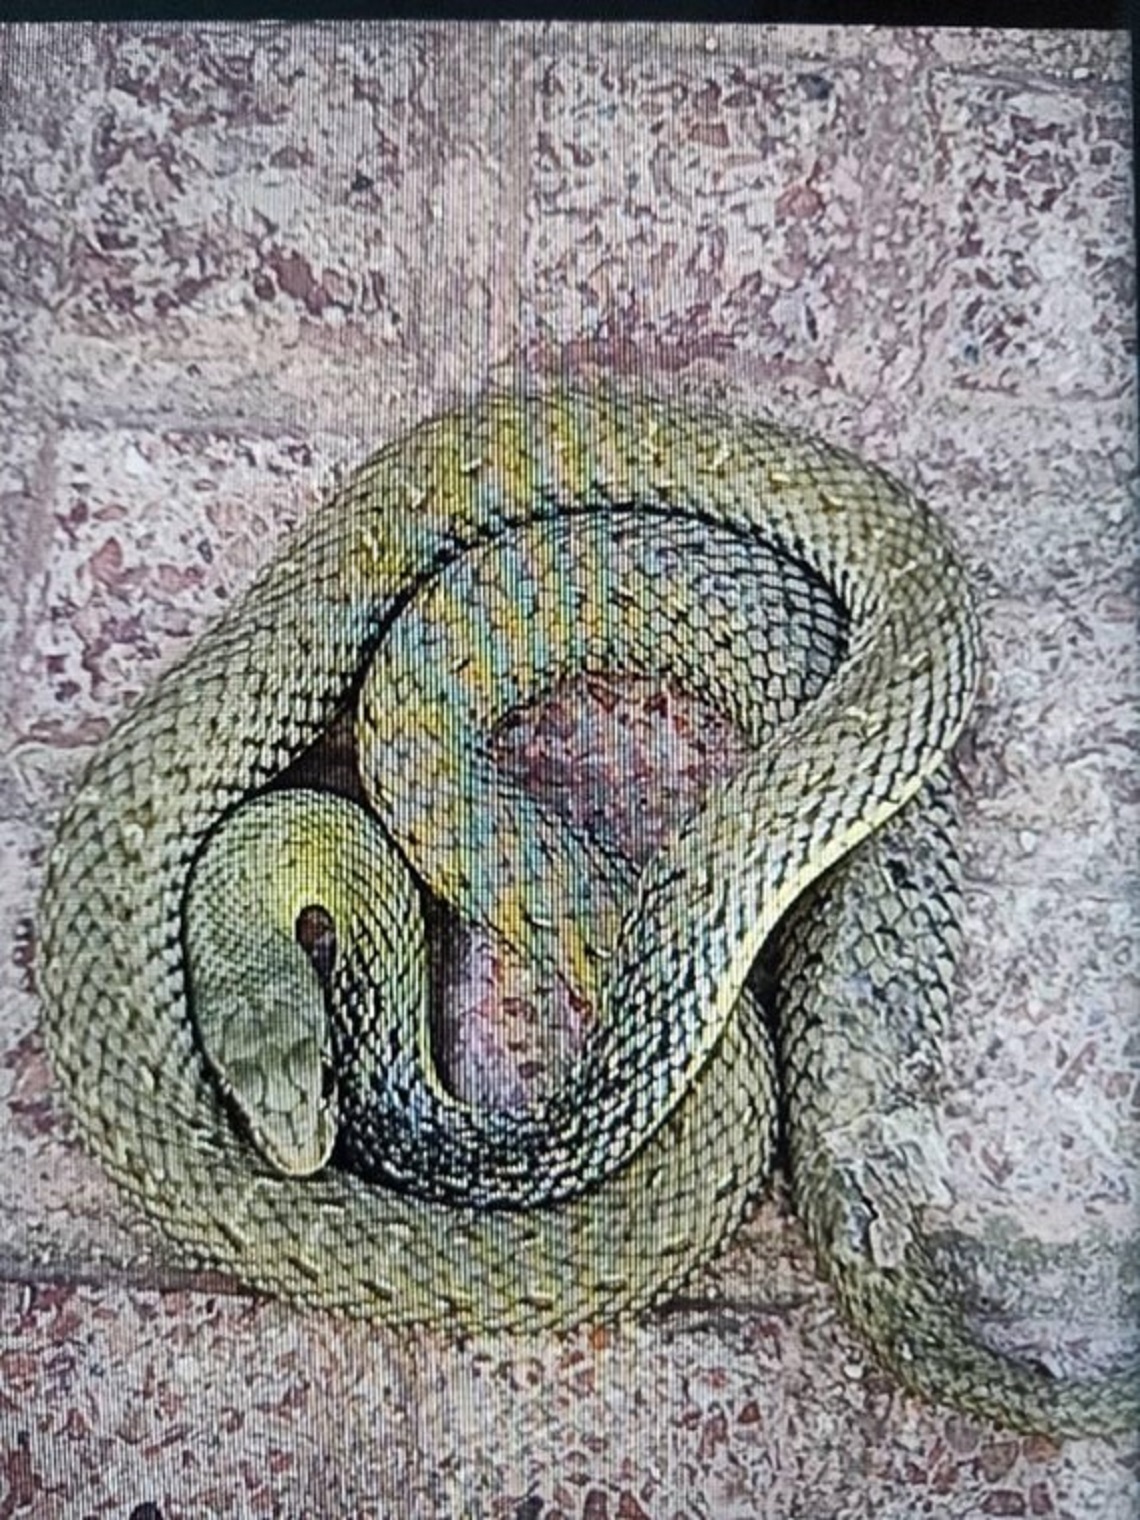 La Policía Local de Torrejón de Ardoz recoge una serpiente